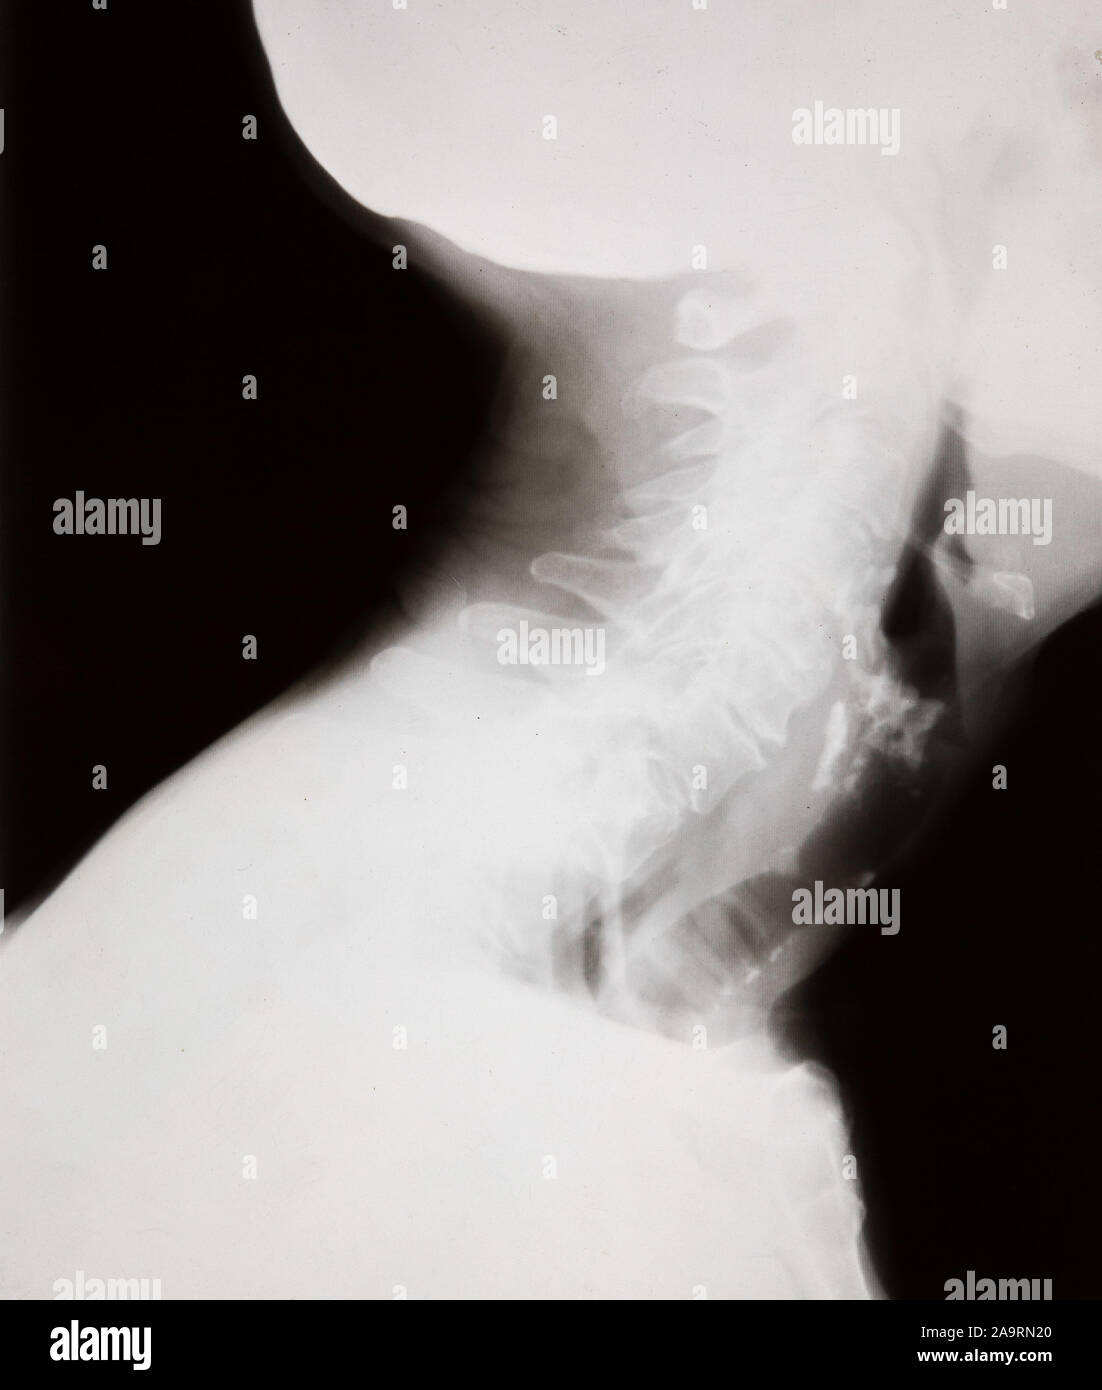 Vue sur le côté d'une radiographie d'une tête humaine, le cou et les épaules Banque D'Images